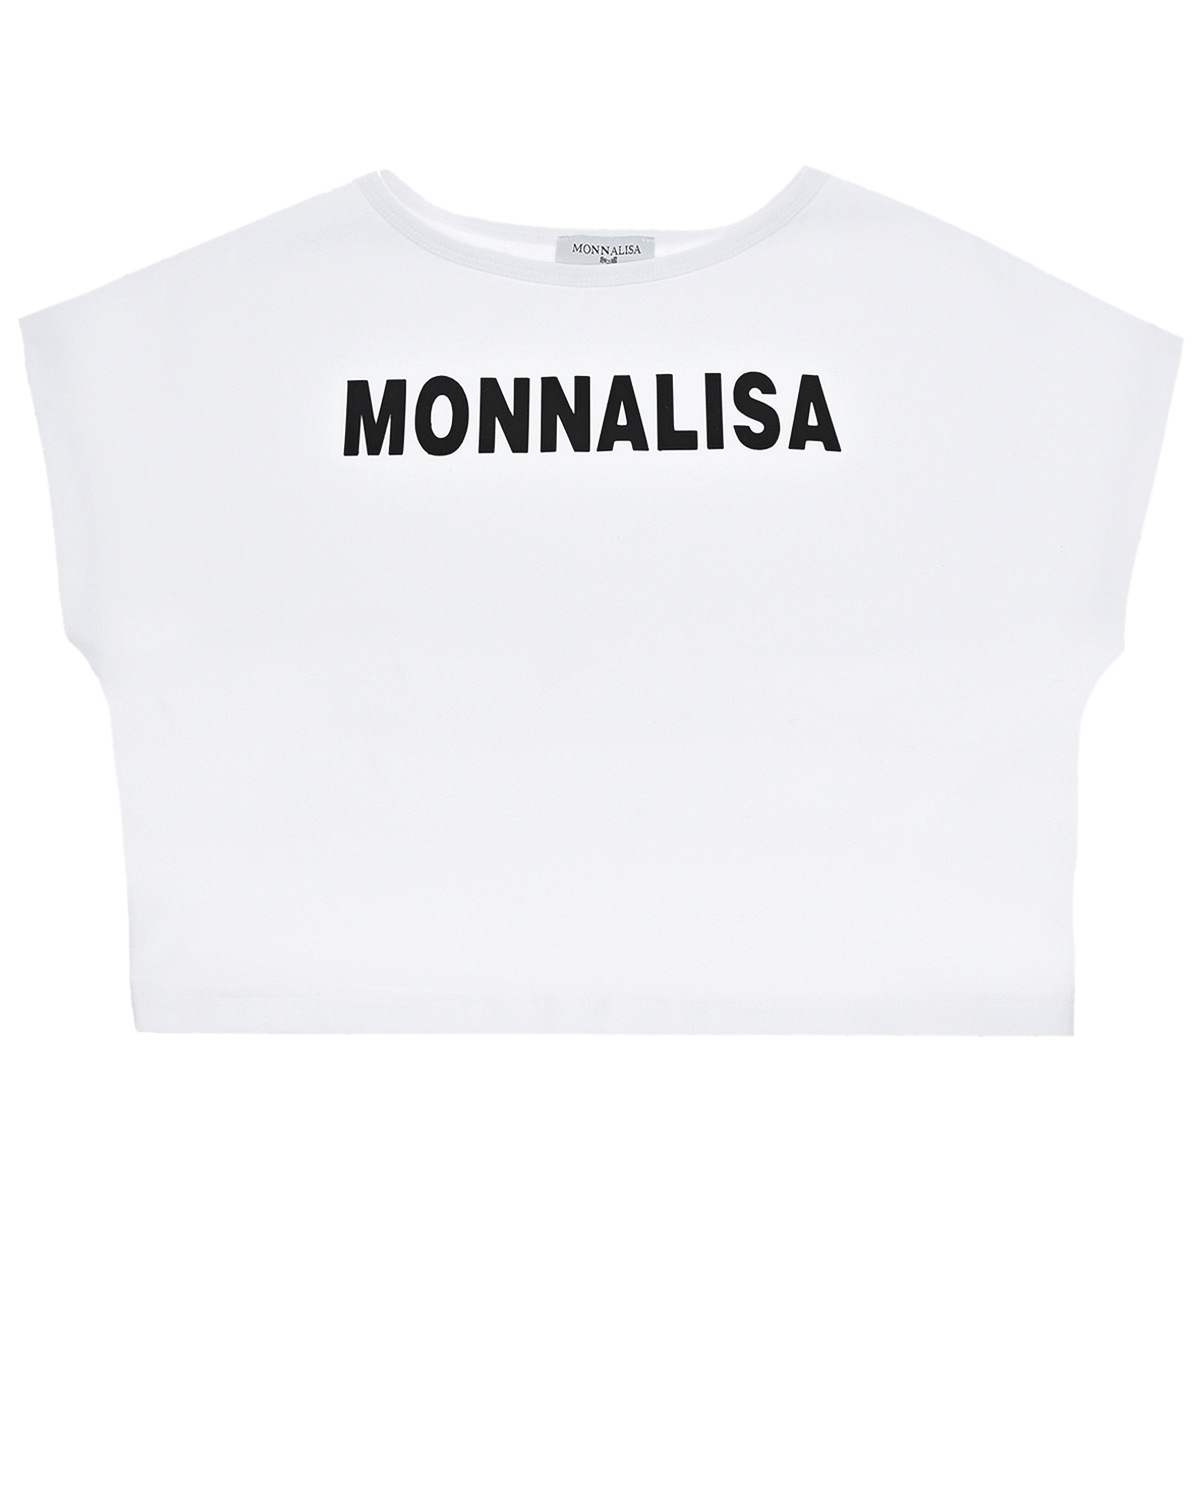 Укороченная футболка с контрастным лого Monnalisa детская, размер 128, цвет белый - фото 1